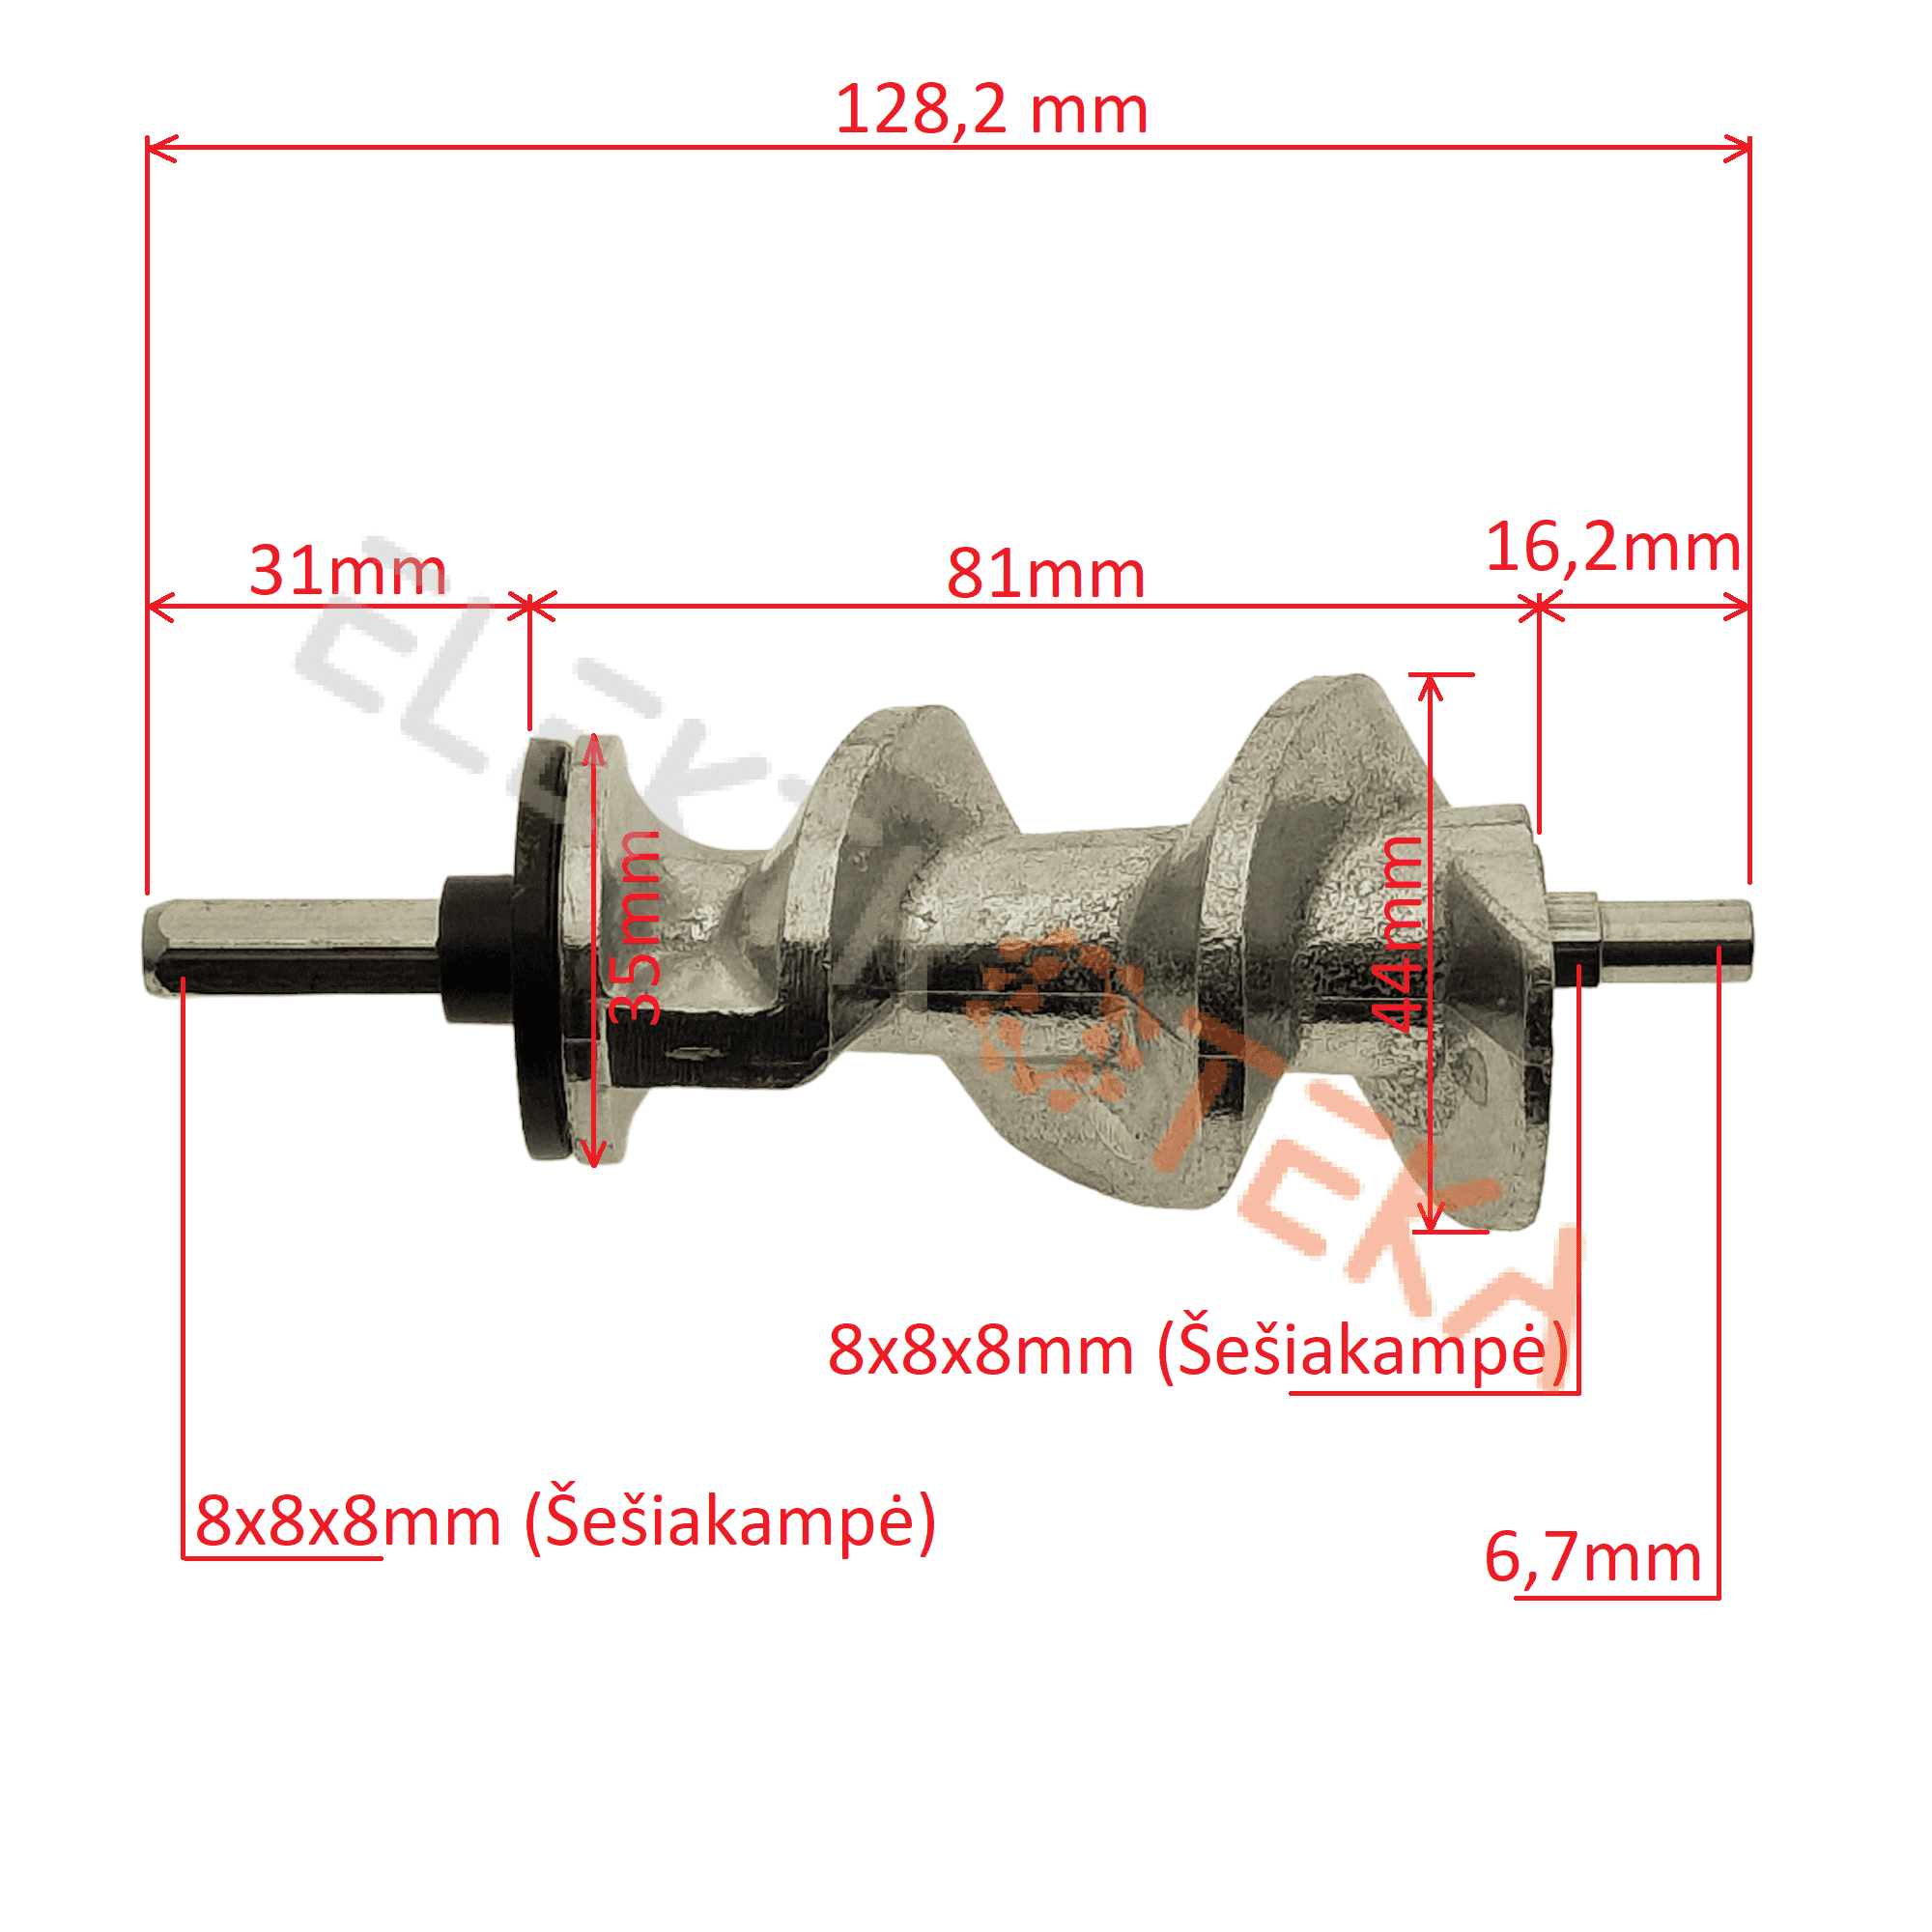 Mėsmalės sraigtas ilgis 128,2mm ašis Ø6,7mm šešiakampė 8x8x8mm